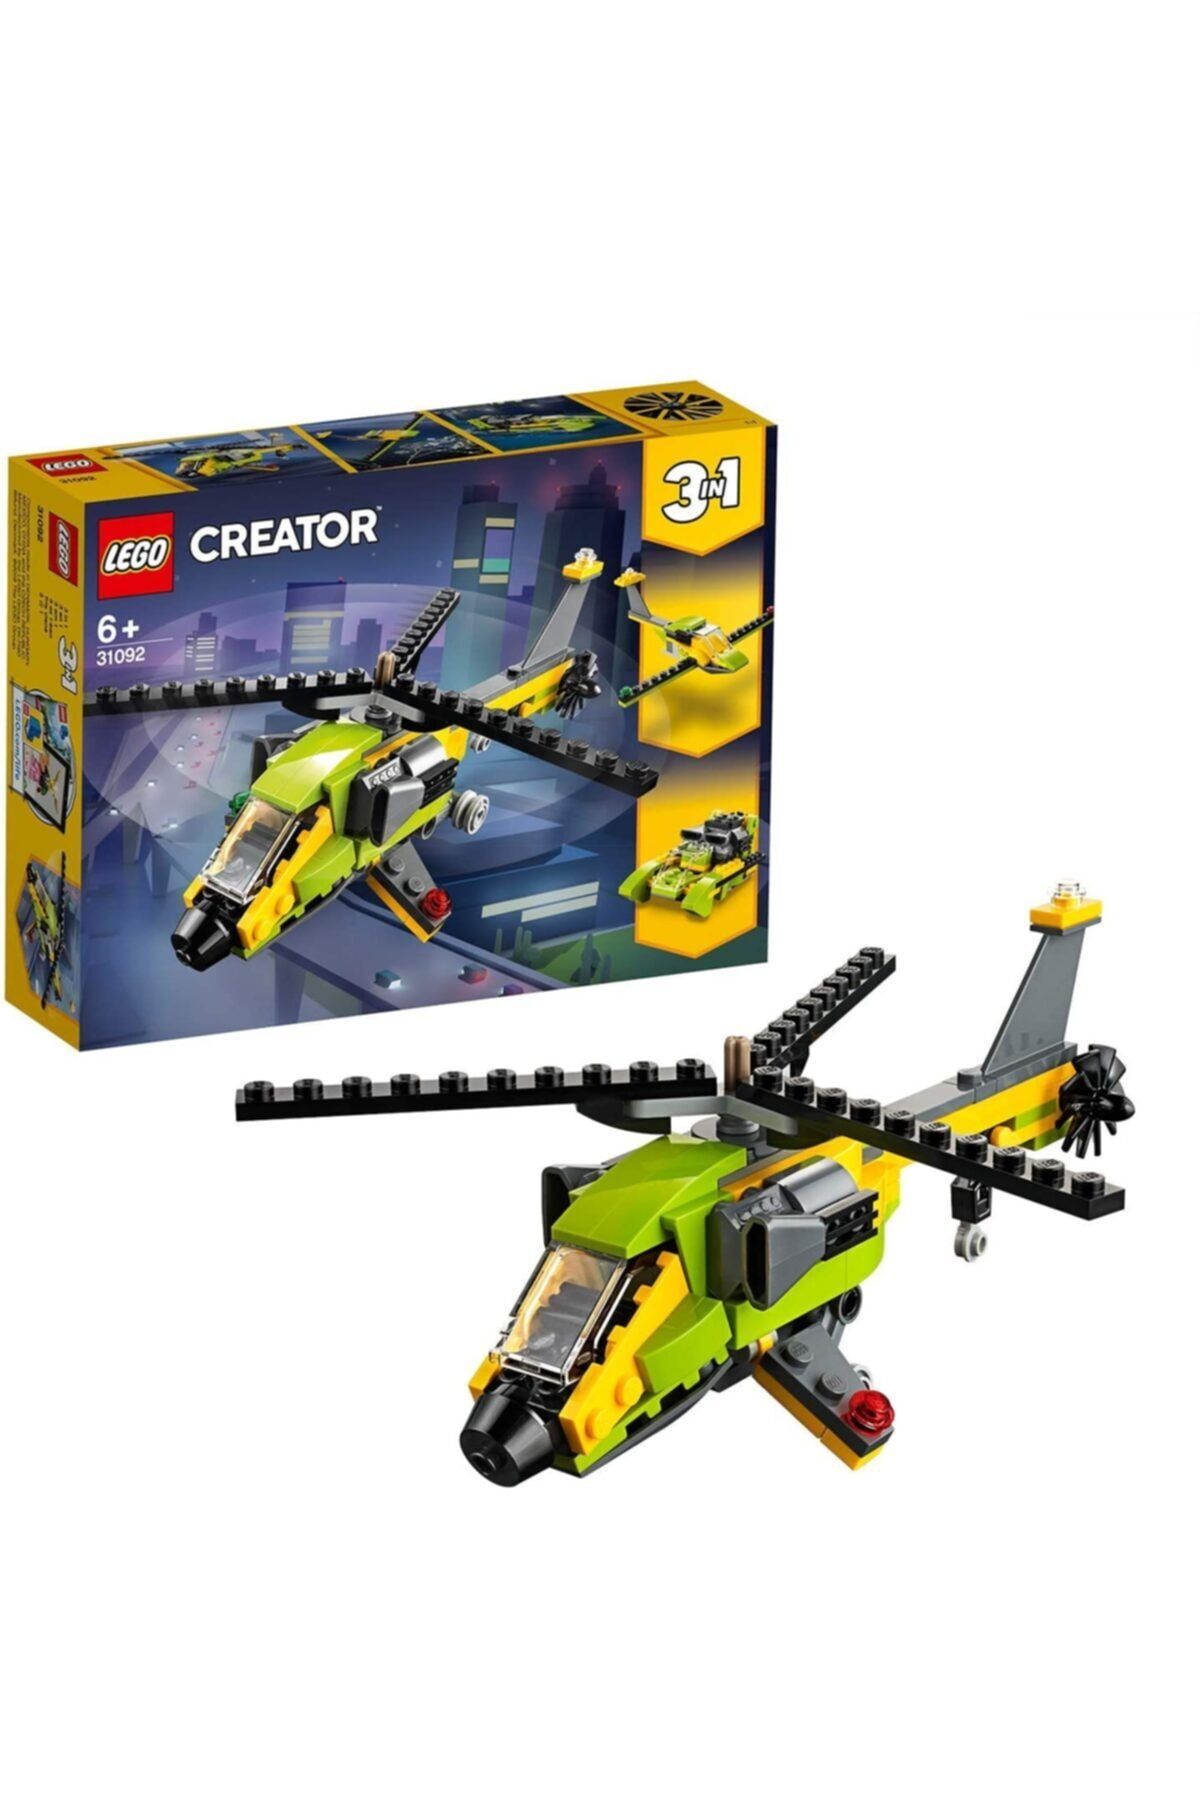 LEGO 31092 Creat.helikopter Macerası /creator +6 Yaş /114 Pcs/